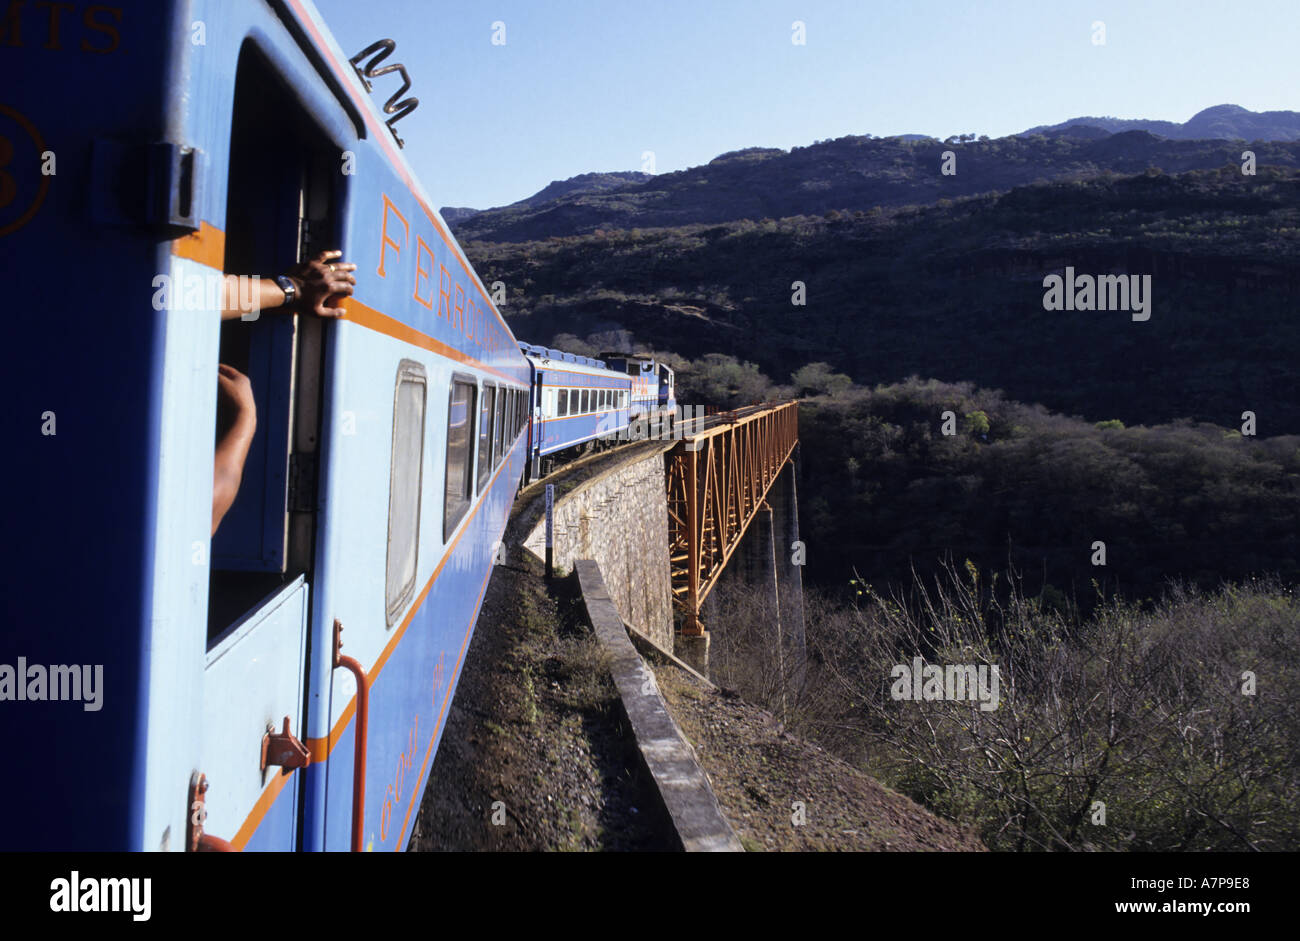 Voyage en Train au Mexique - Le célèbre Chihuahua Al Pacifico railway / Copper Canyon Railroad - traversant un pont Banque D'Images